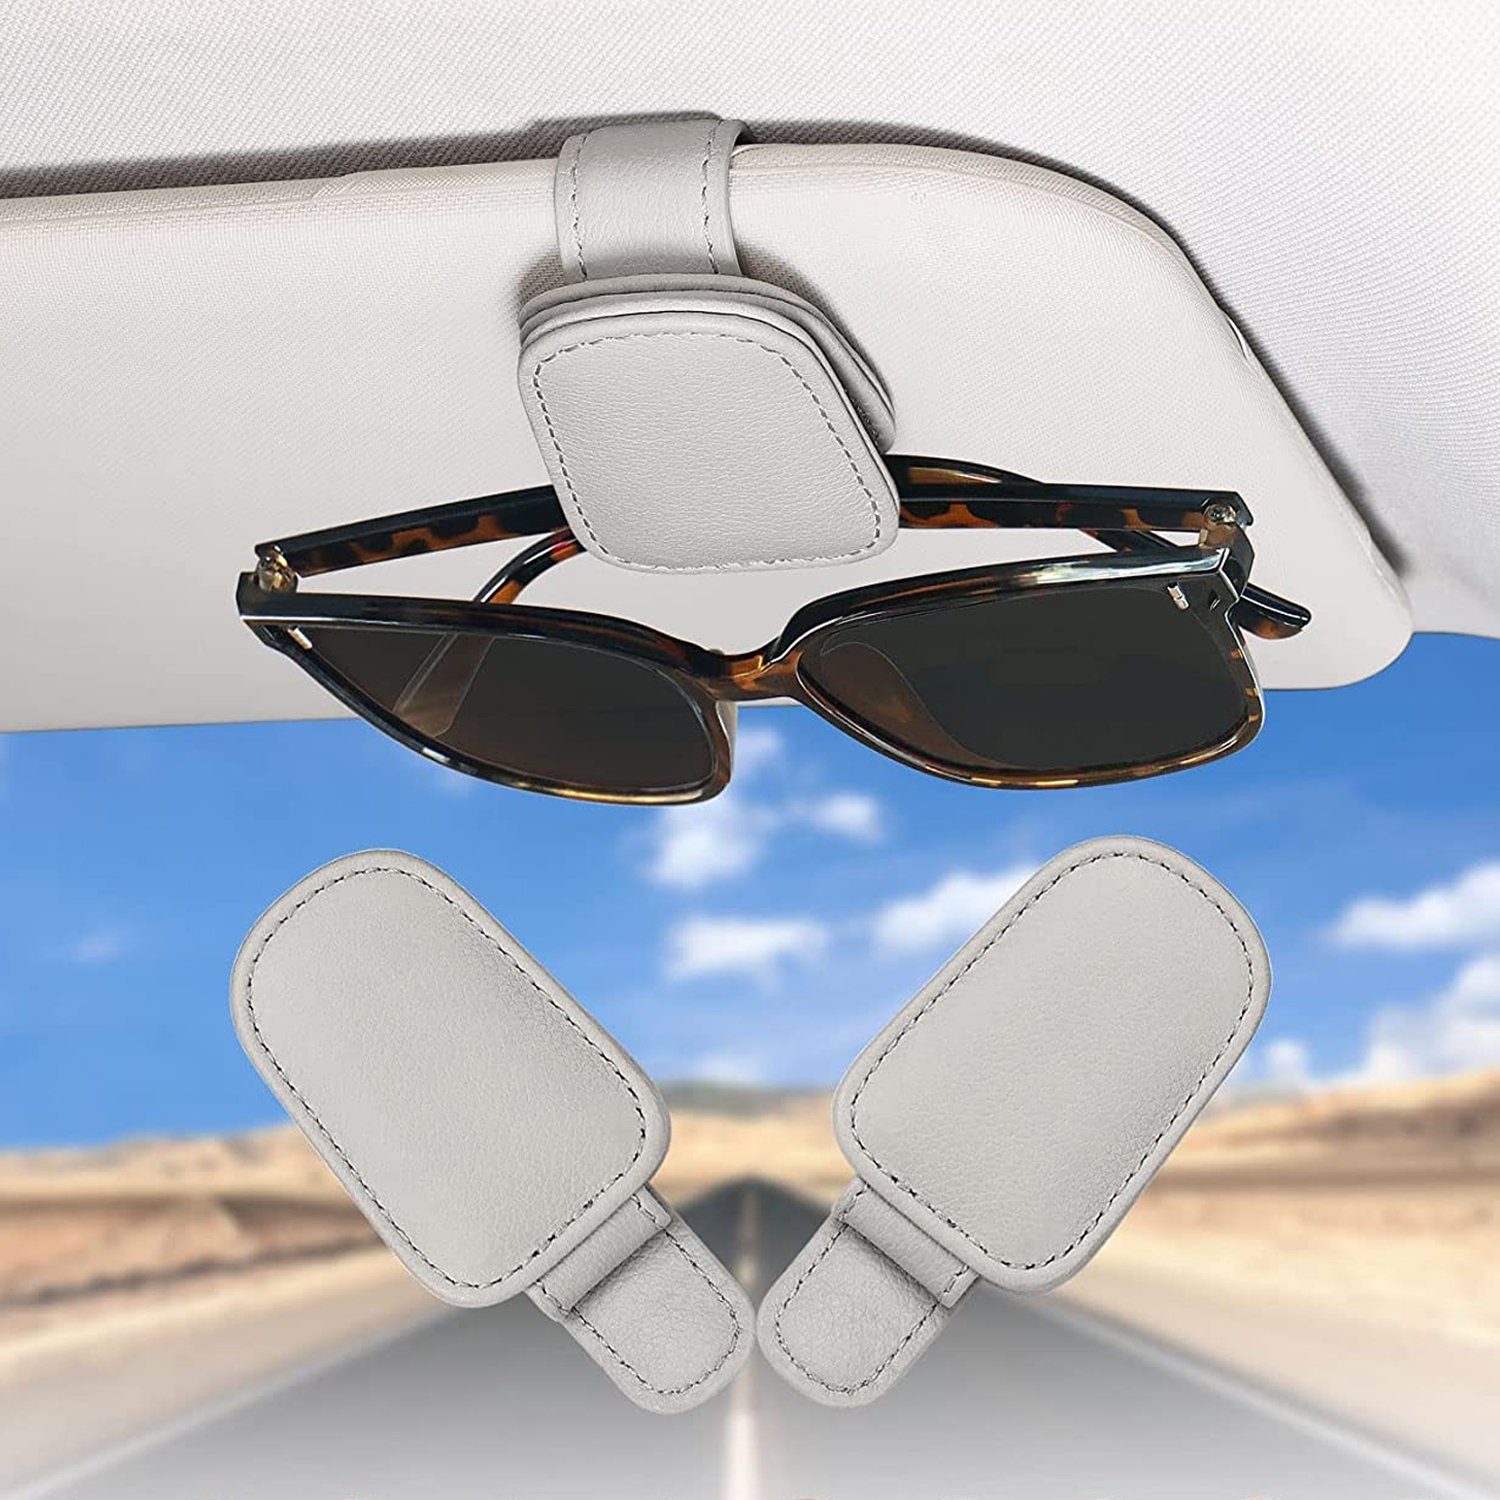 Autosonnenschutz Auto Brillenhalter Sonnenbrillenhalterung Pack Visier NUODWELL 2 Sonnenblende, Grau